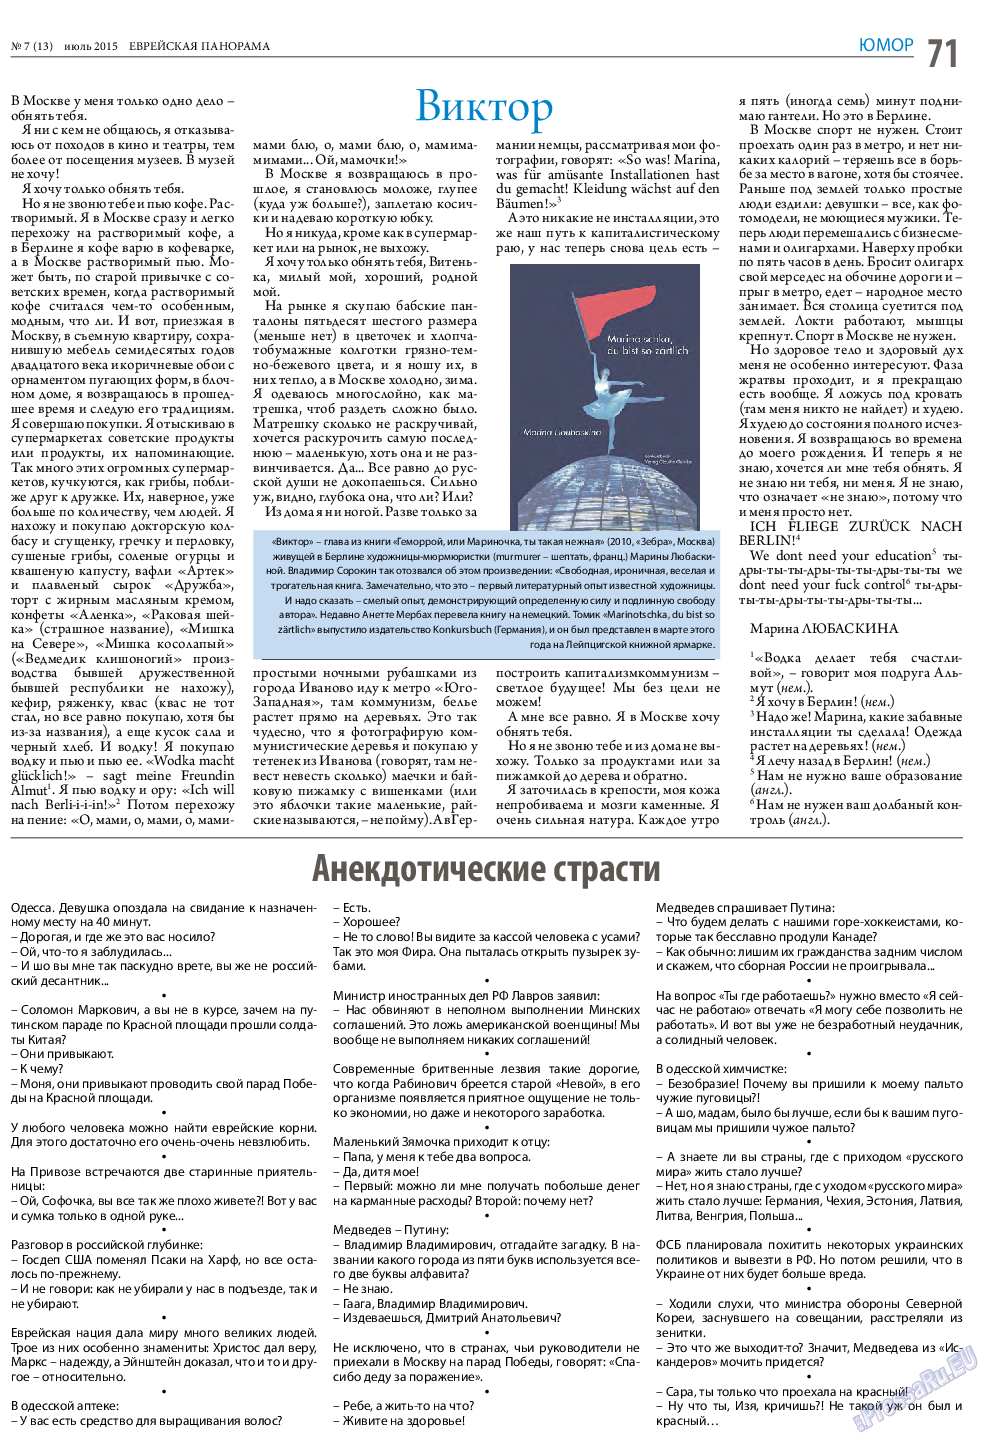 Еврейская панорама (газета). 2015 год, номер 7, стр. 71